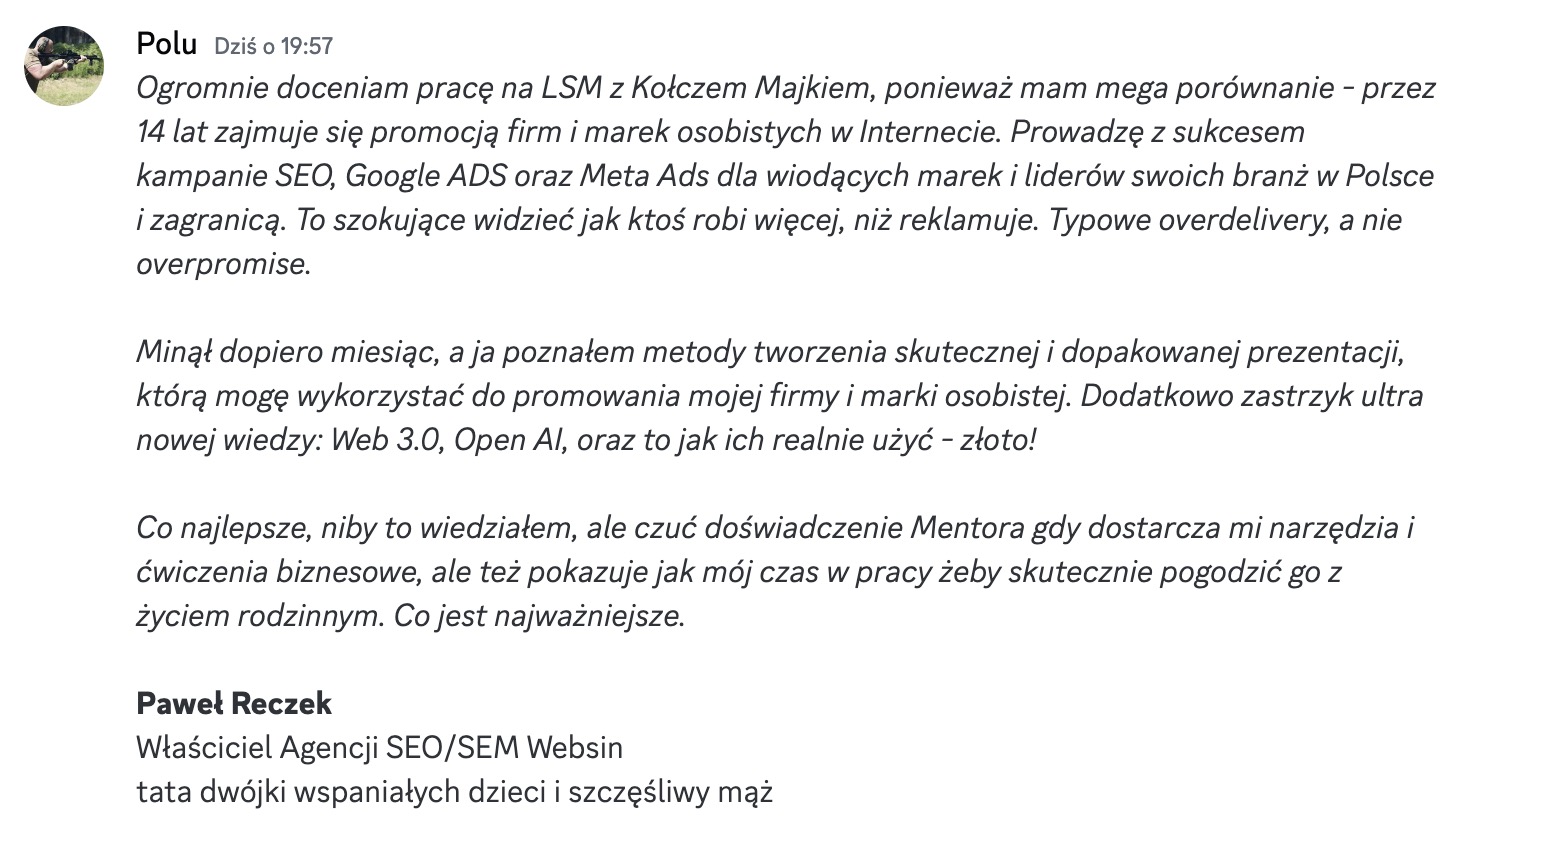 Opinia Grupowego LSM z Michałem "Kołczem Majkiem" Wawrzyniakiem